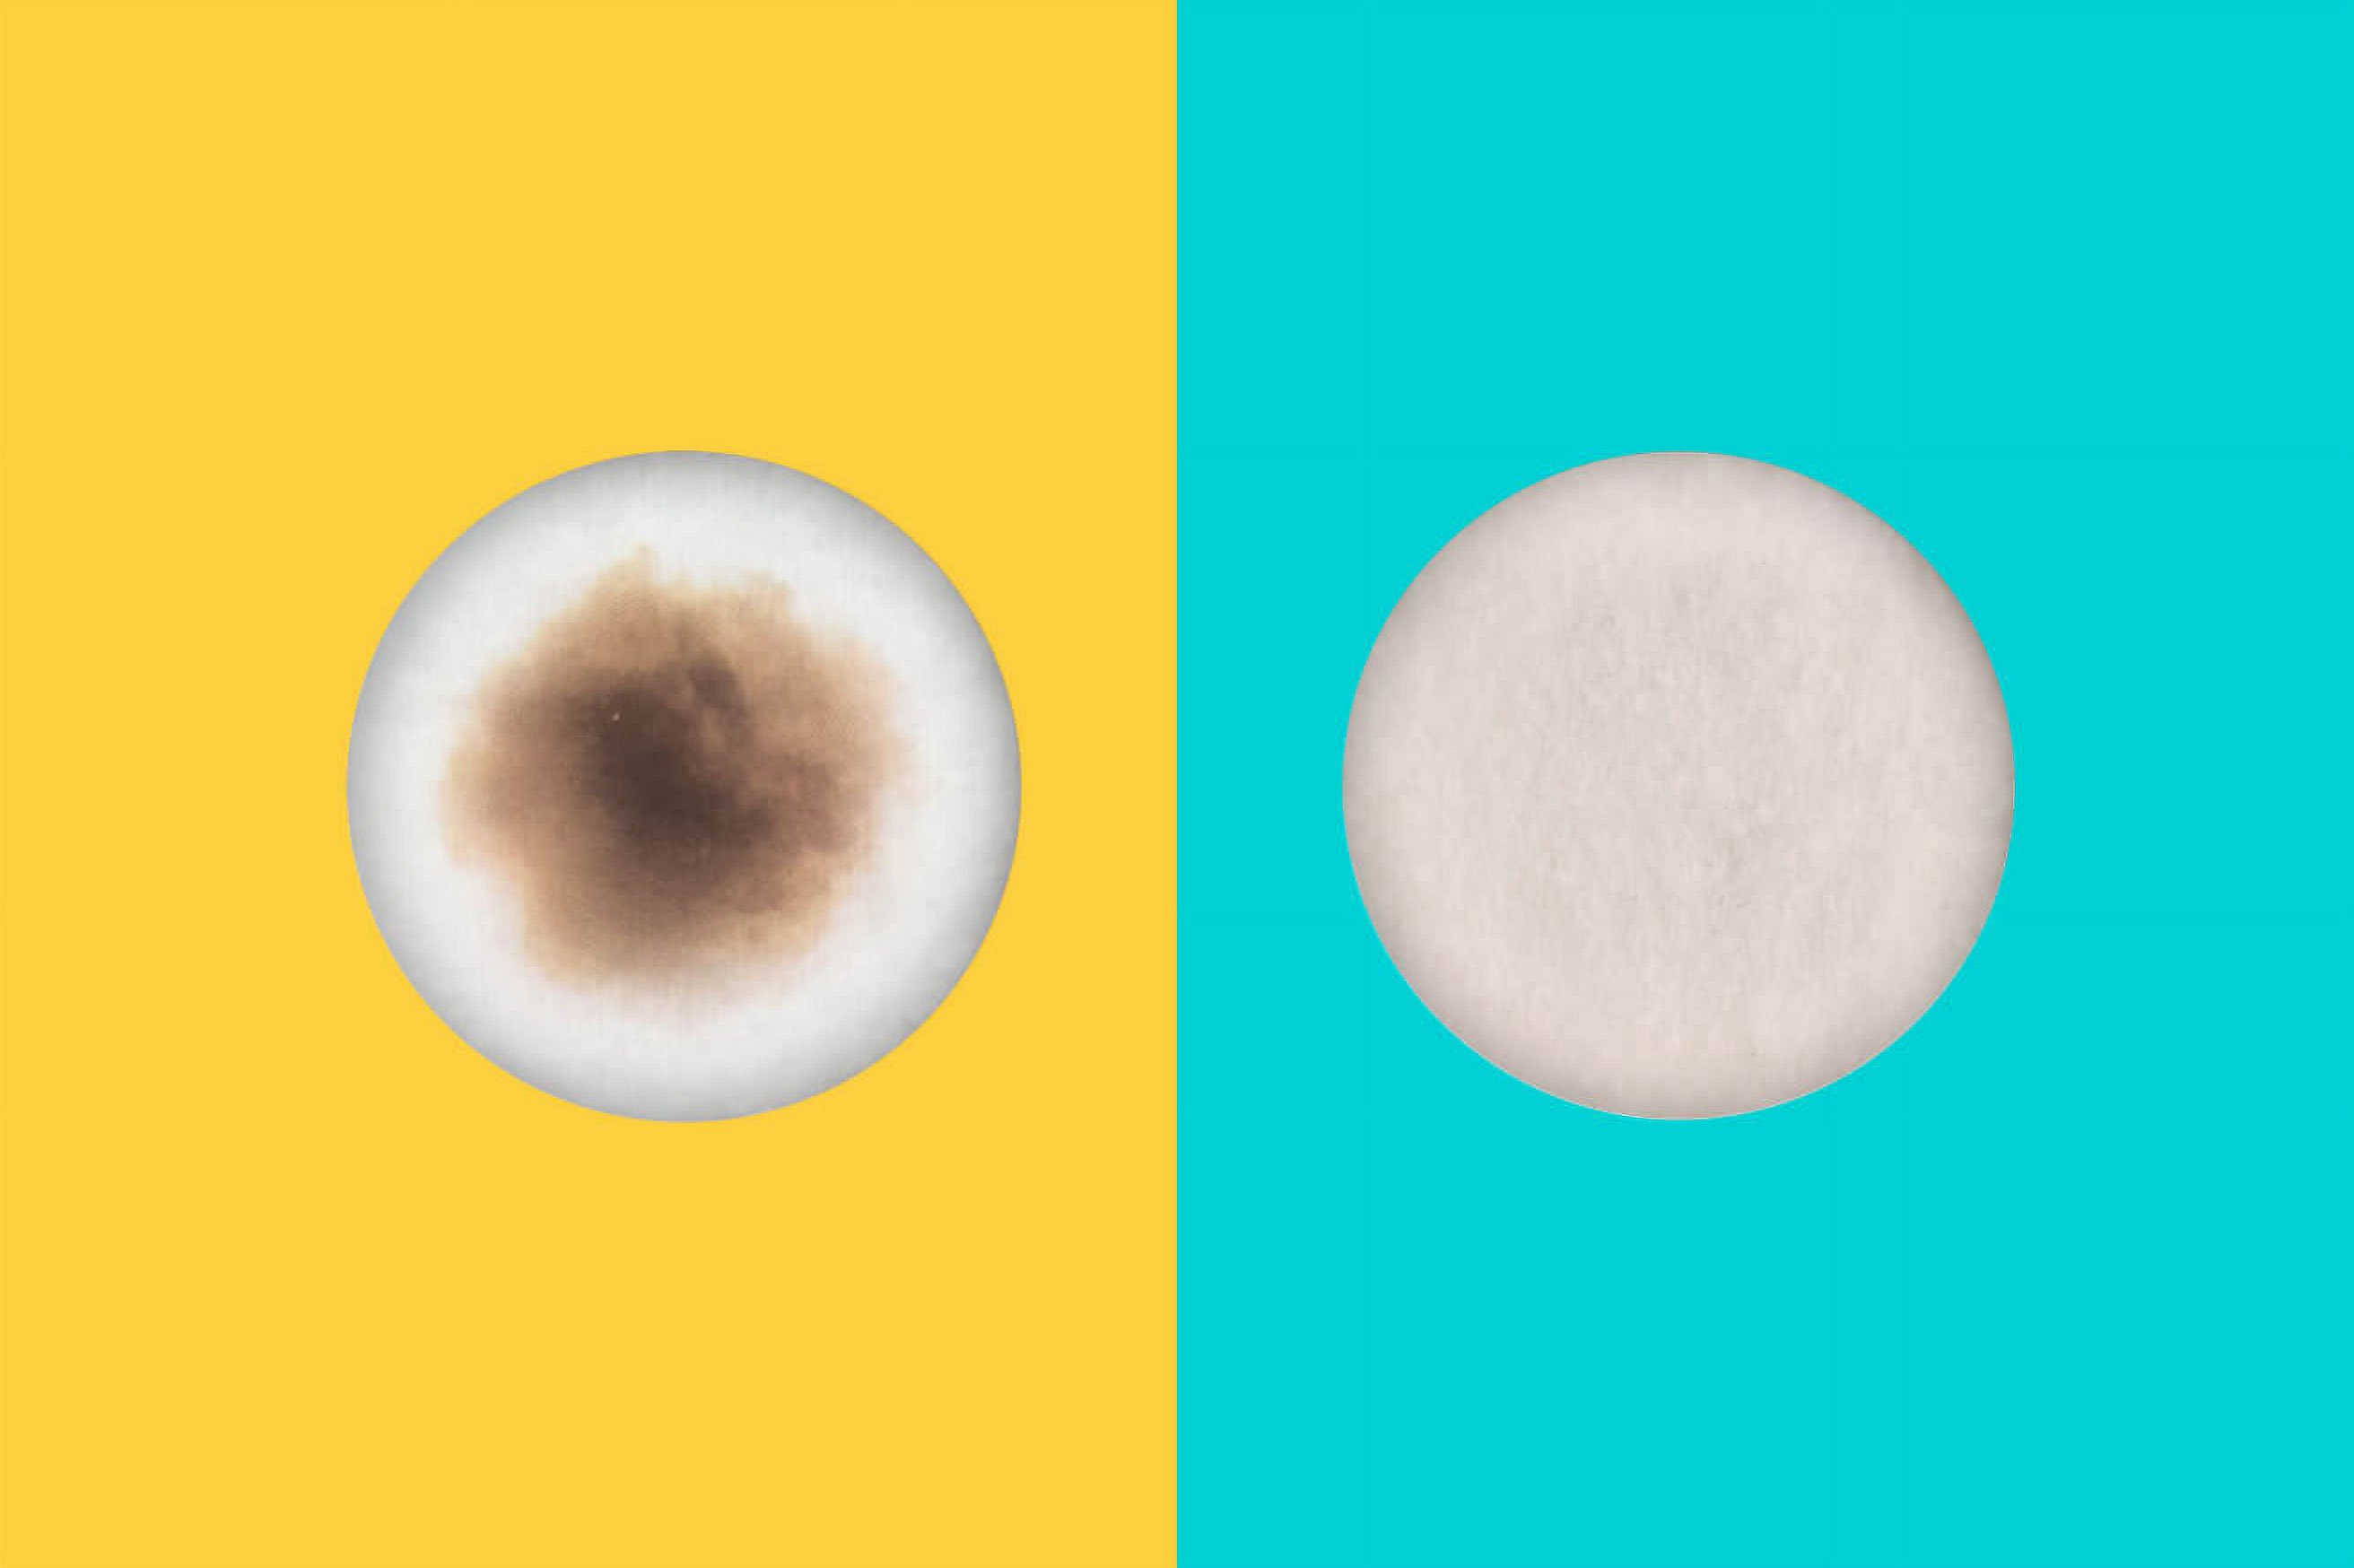 magen ilustrativa de la diferencia visual entre el humo de un cigarrillo y el aerosol emitido por IQOS (el resultado puede variar en función del uso individual).